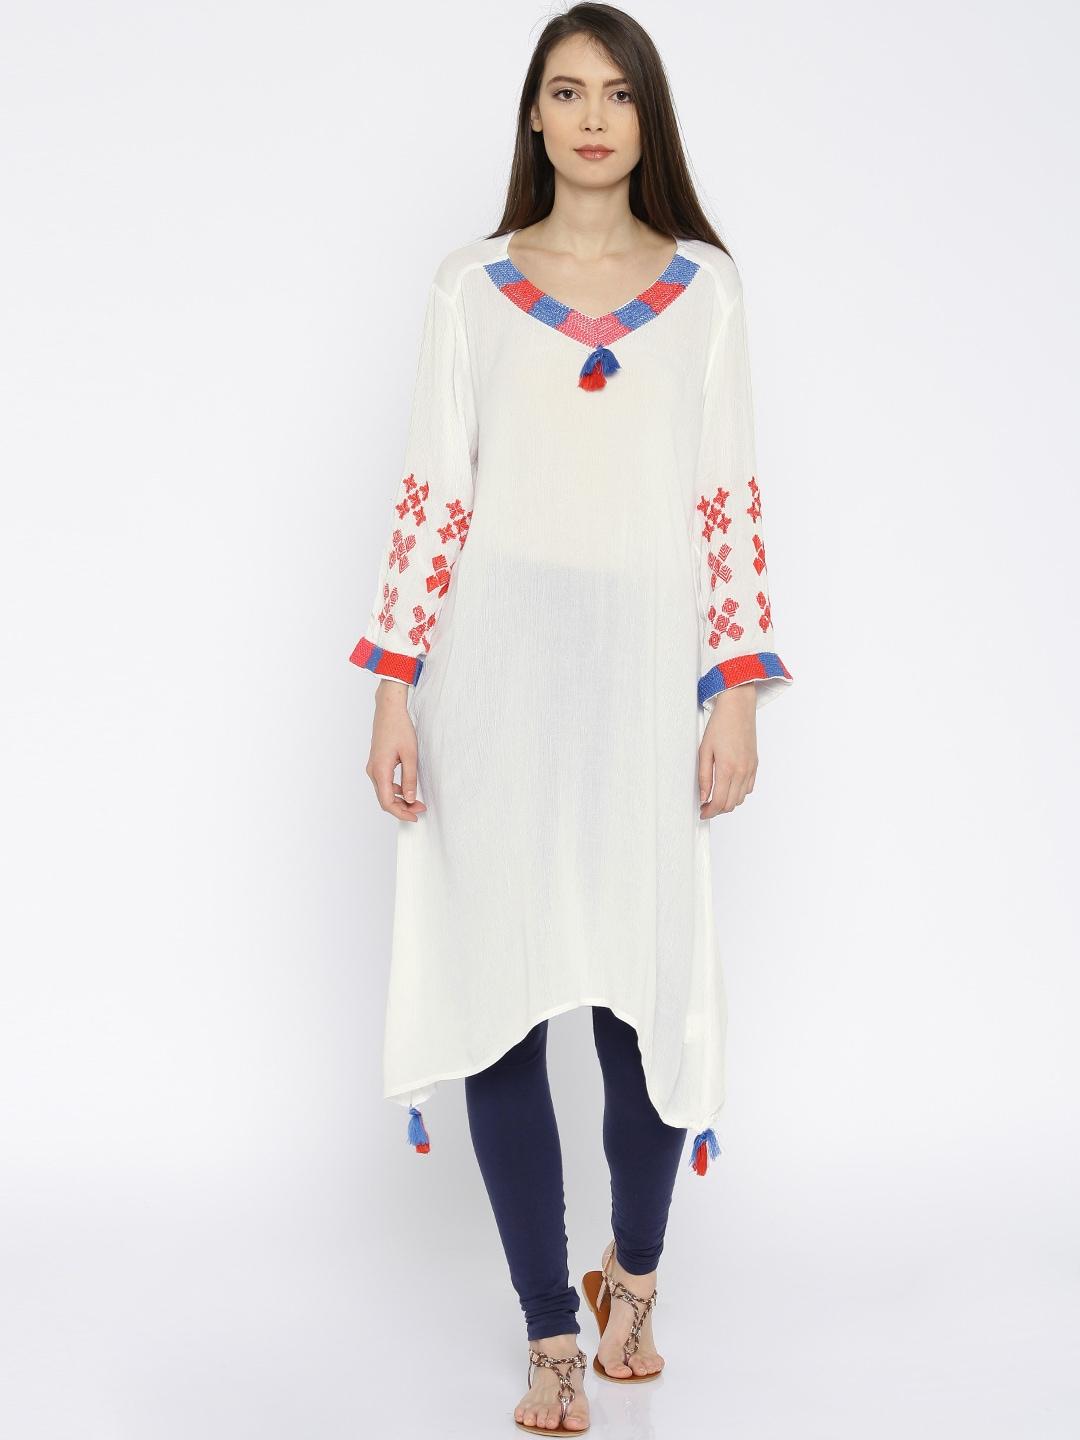 akkriti by pantaloons women white solid asymmetric a-line kurta